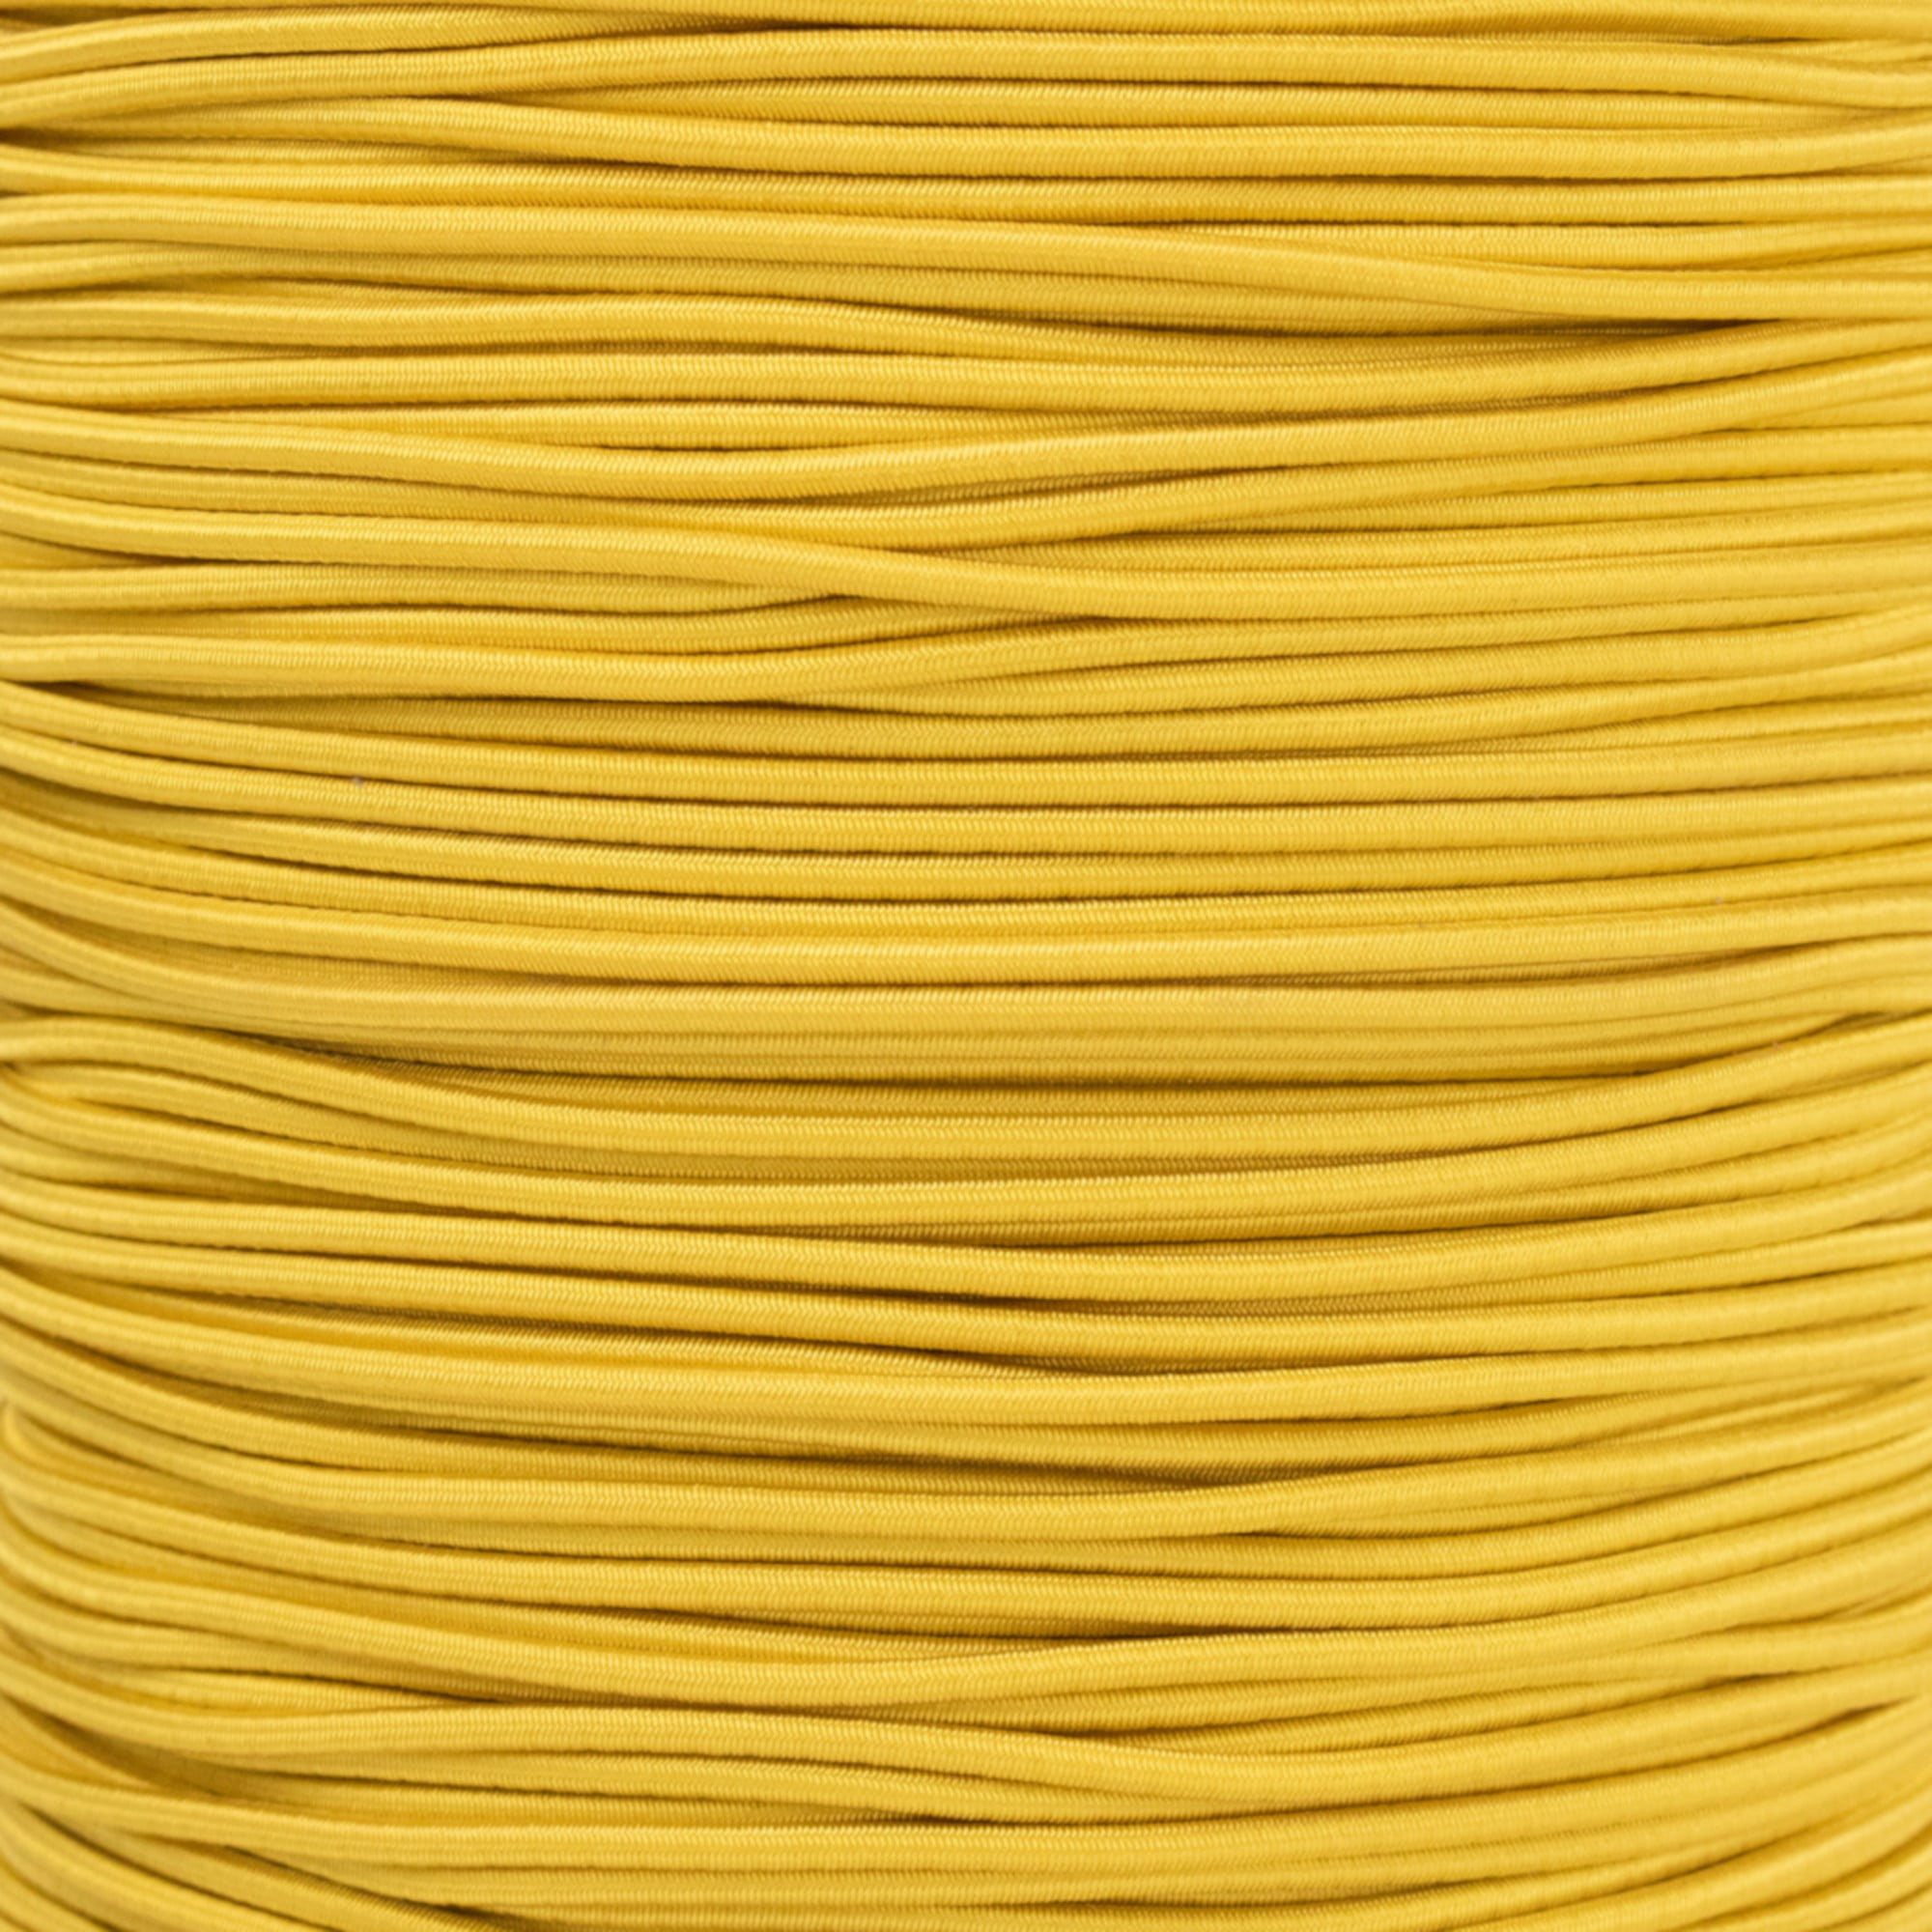 Elastic rope bungee shock cord tie down black or white 2.5 3 6 7 8 10 mm 